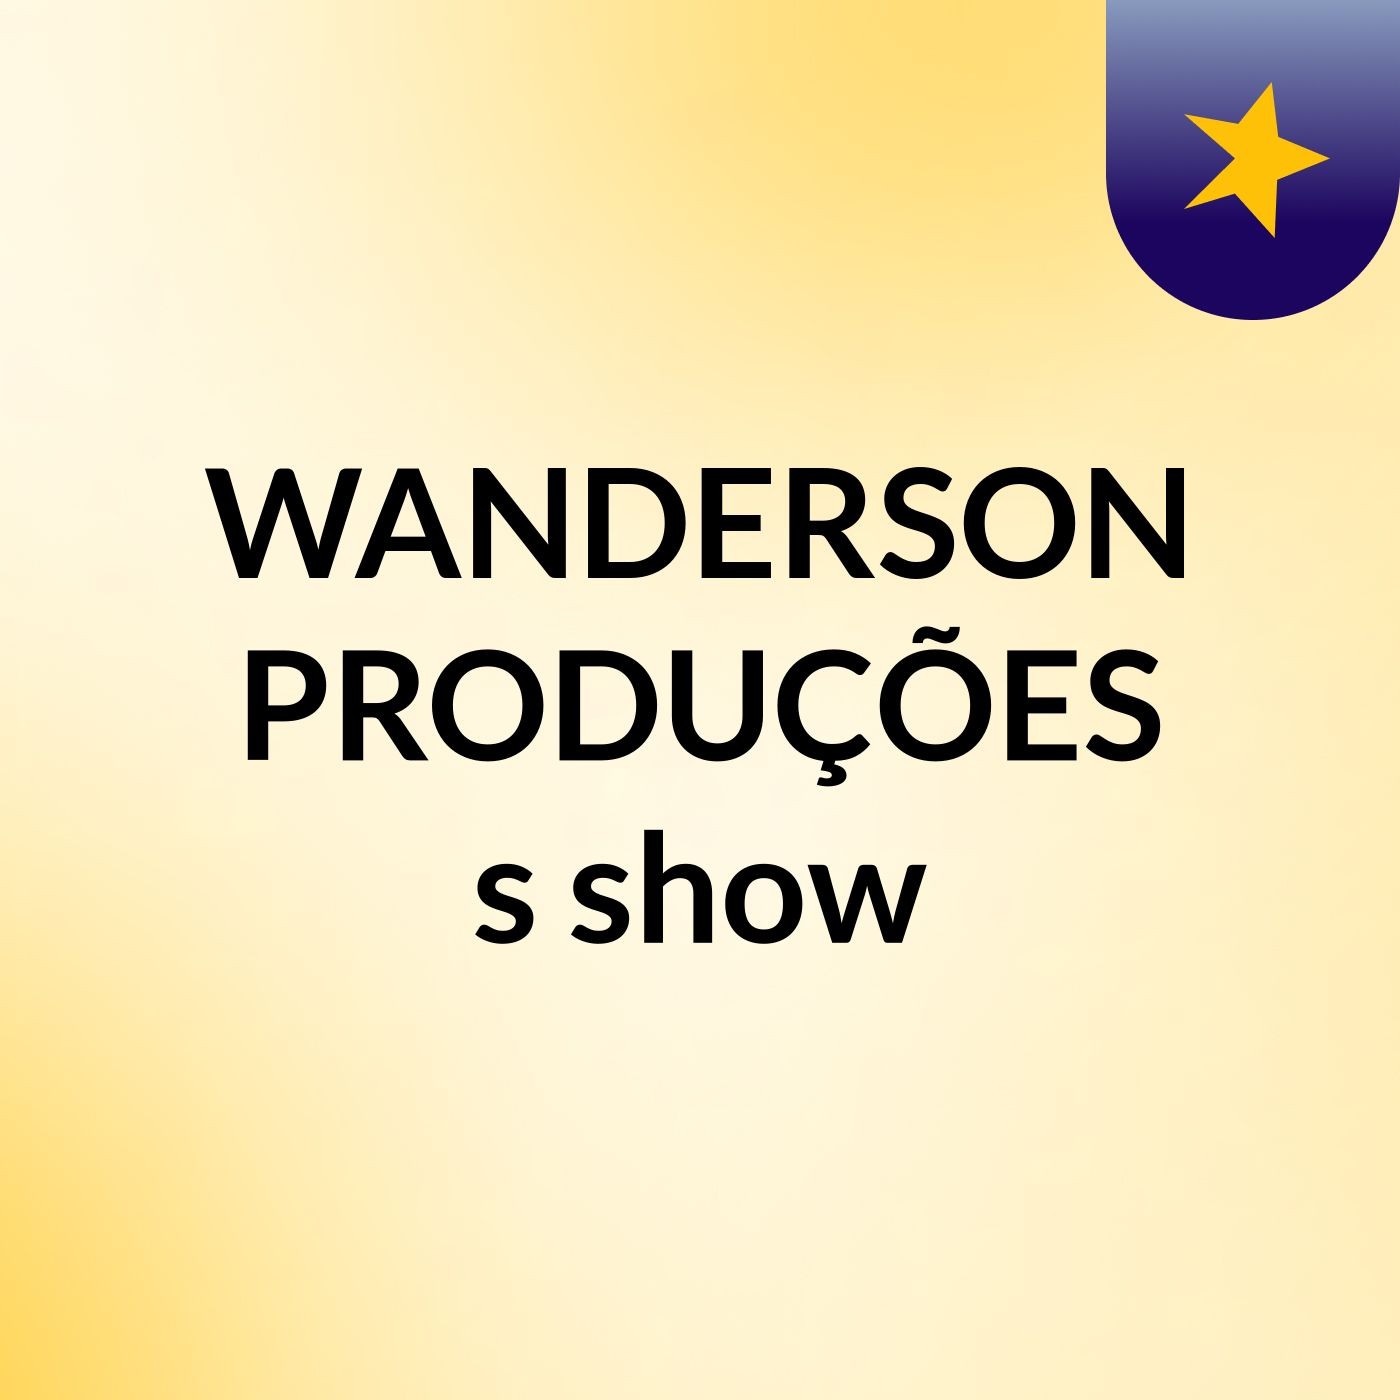 WANDERSON PRODUÇÕES's show